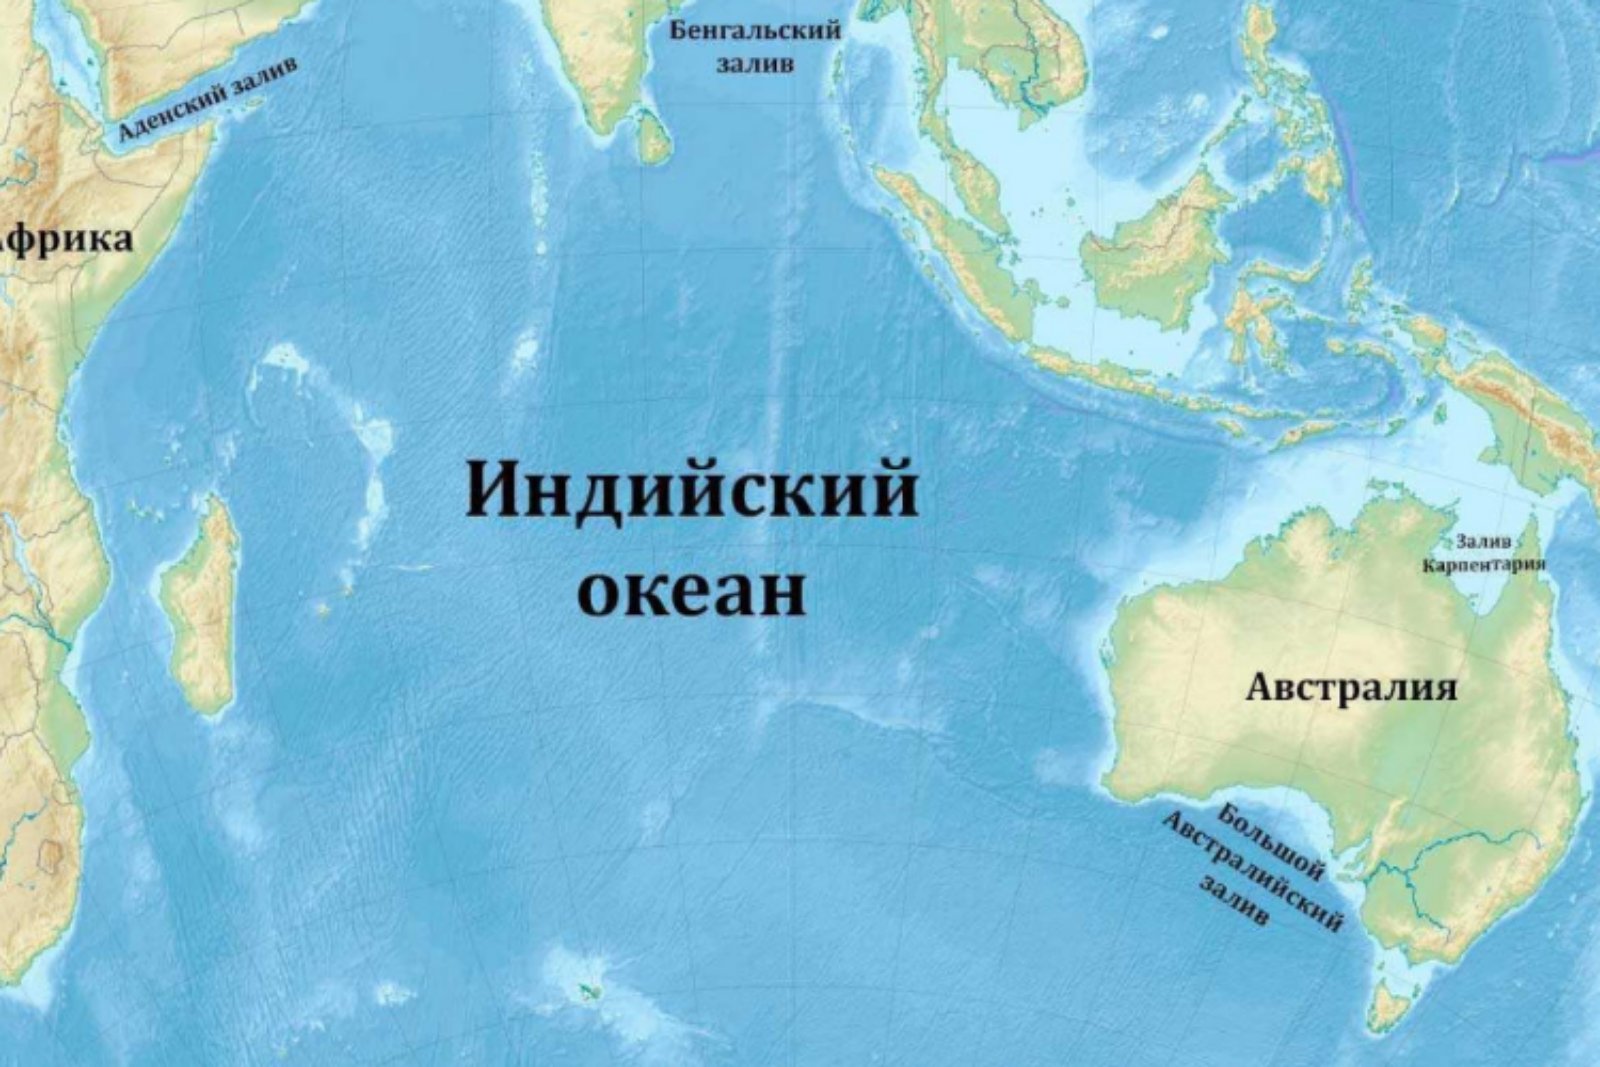 Местоположение океанов. Оманский залив на карте индийского океана. Заливы и проливы индийского океана на карте. Индийский океан на карте. Кварта индийского океана.